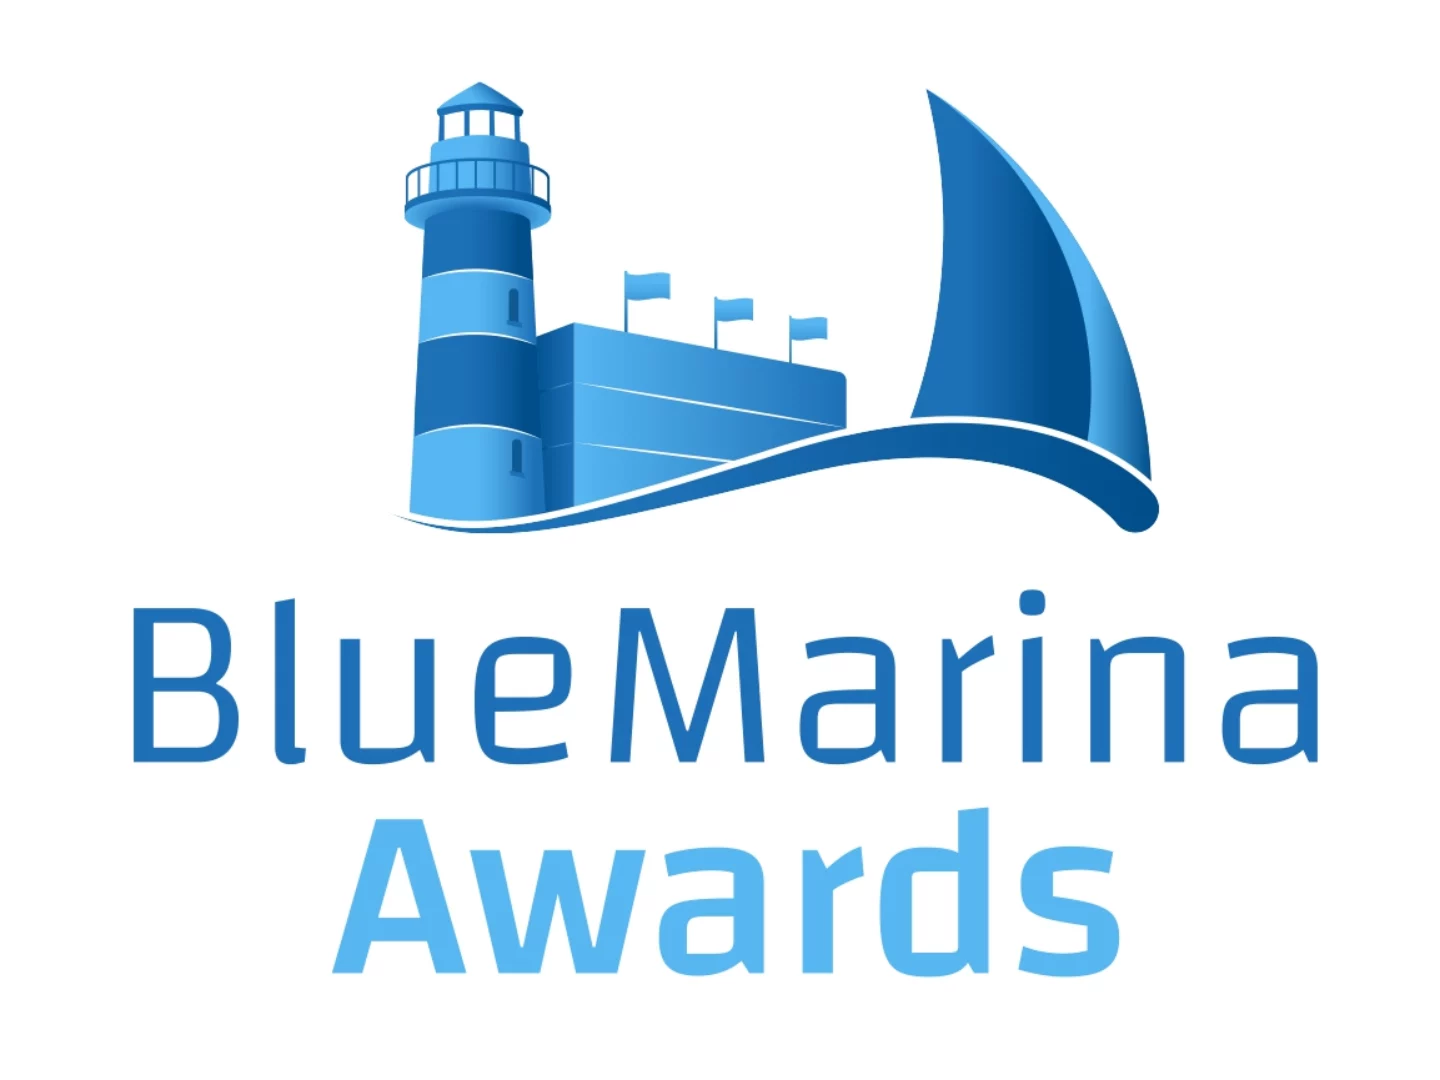 I BLUE MARINA AWARDS promuovono eccellenza e sostenibilità nei porti italiani, incoraggiando la crescita del settore e offrendo riconoscimento alle migliori pratiche.